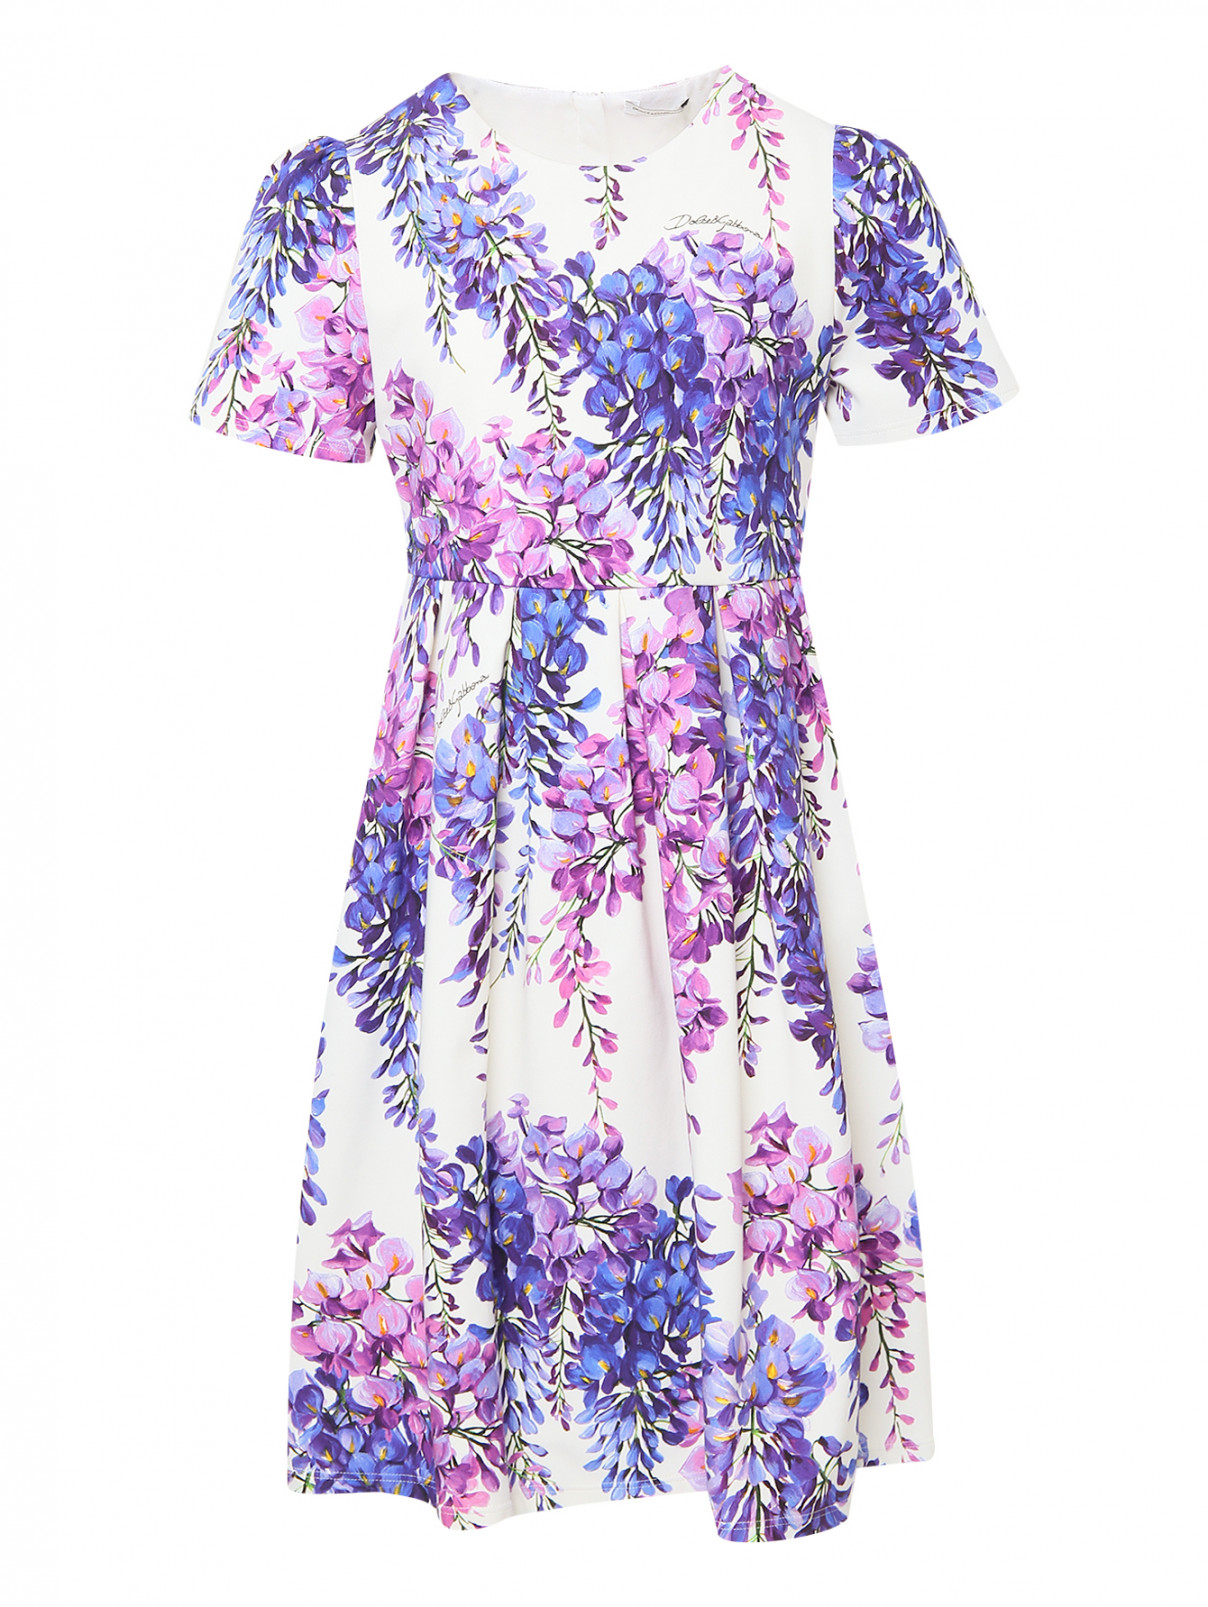 Хлопковое платье с коротким рукавом Dolce & Gabbana  –  Общий вид  – Цвет:  Узор